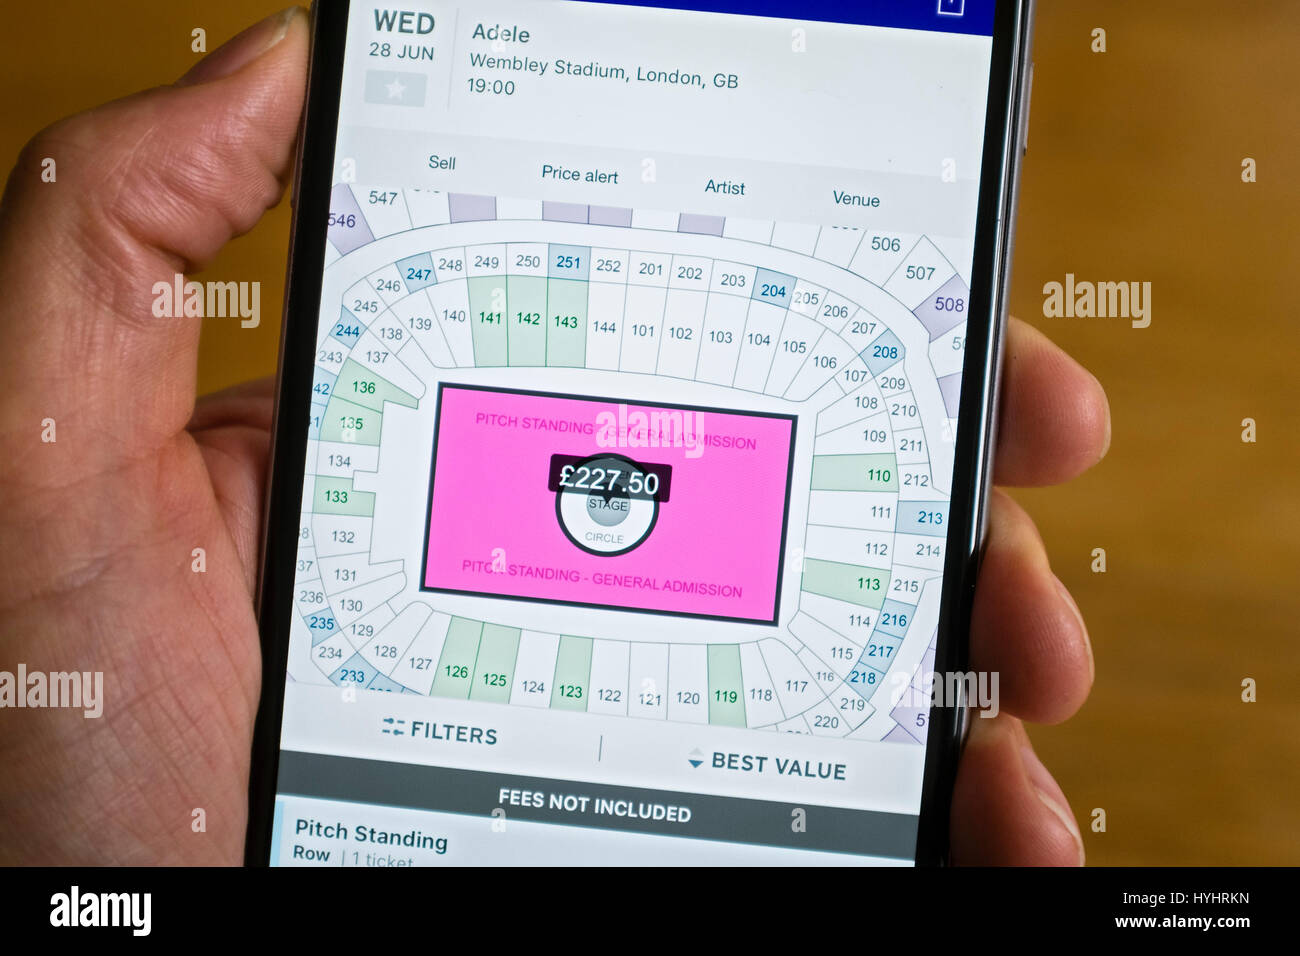 Stubhub online vendita biglietti sito web che mostra piano di posti a sedere e prezzi per Adele concerto su smart phone schermo. Foto Stock